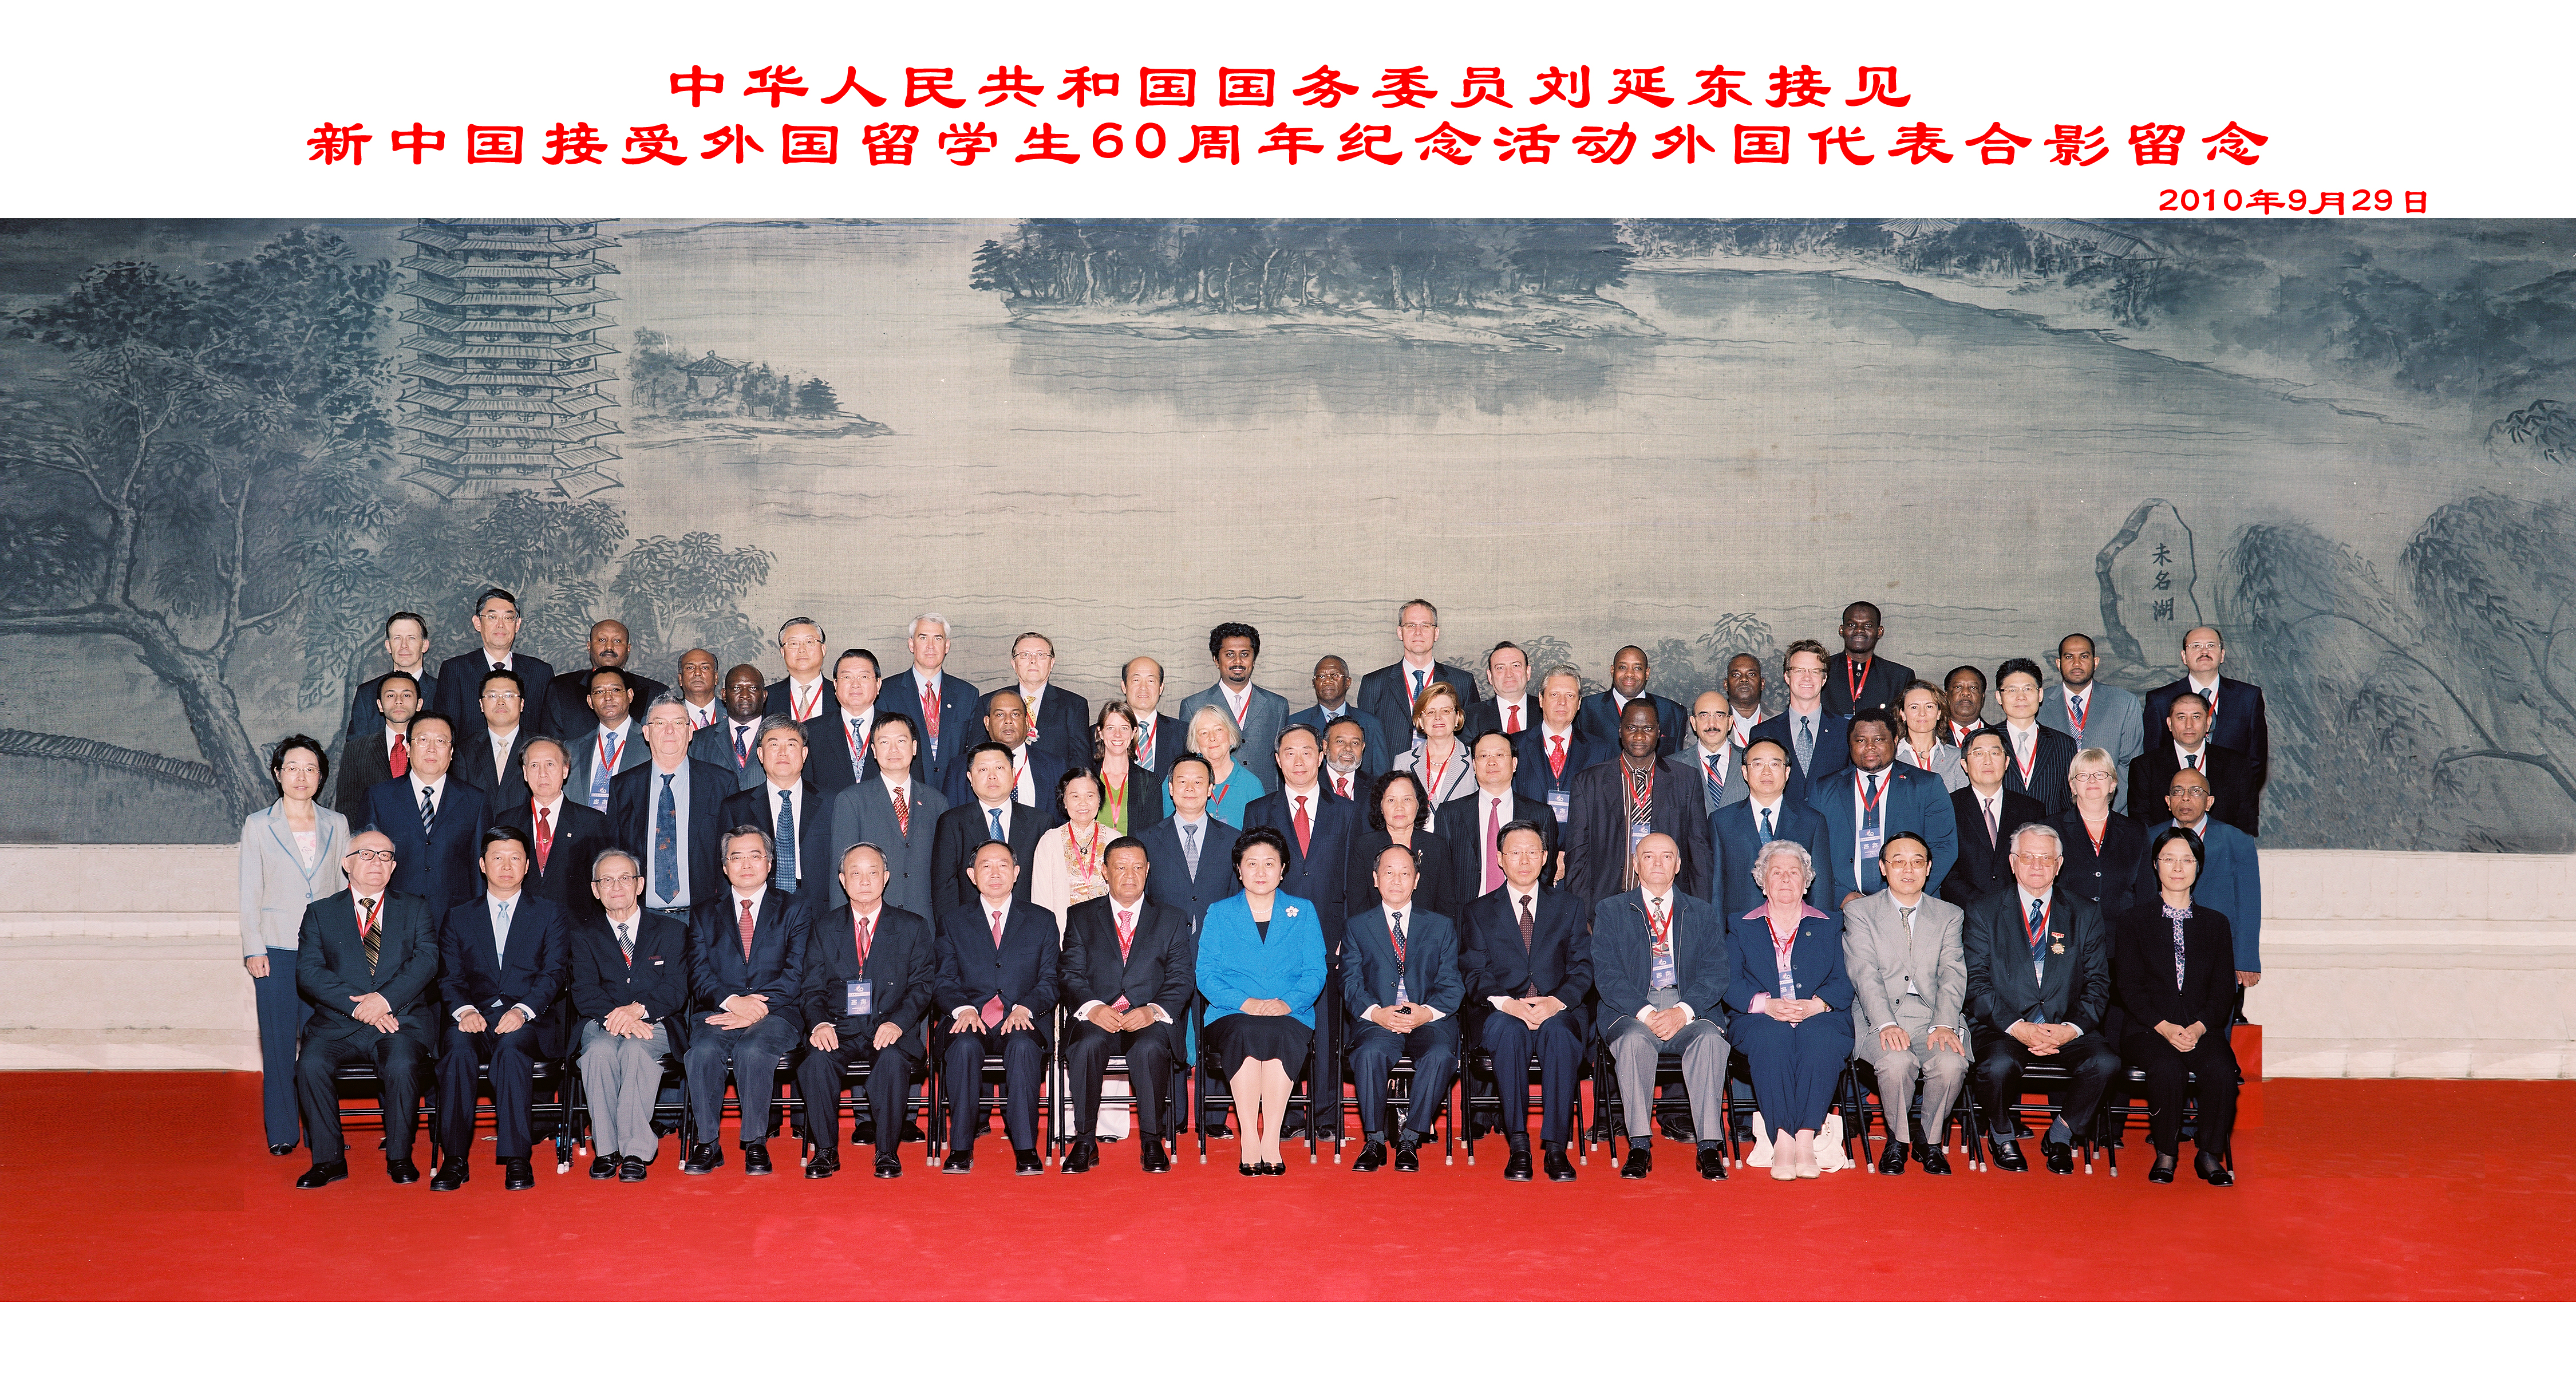 阿基德出席新中国成立60周年来华留学60年座谈会